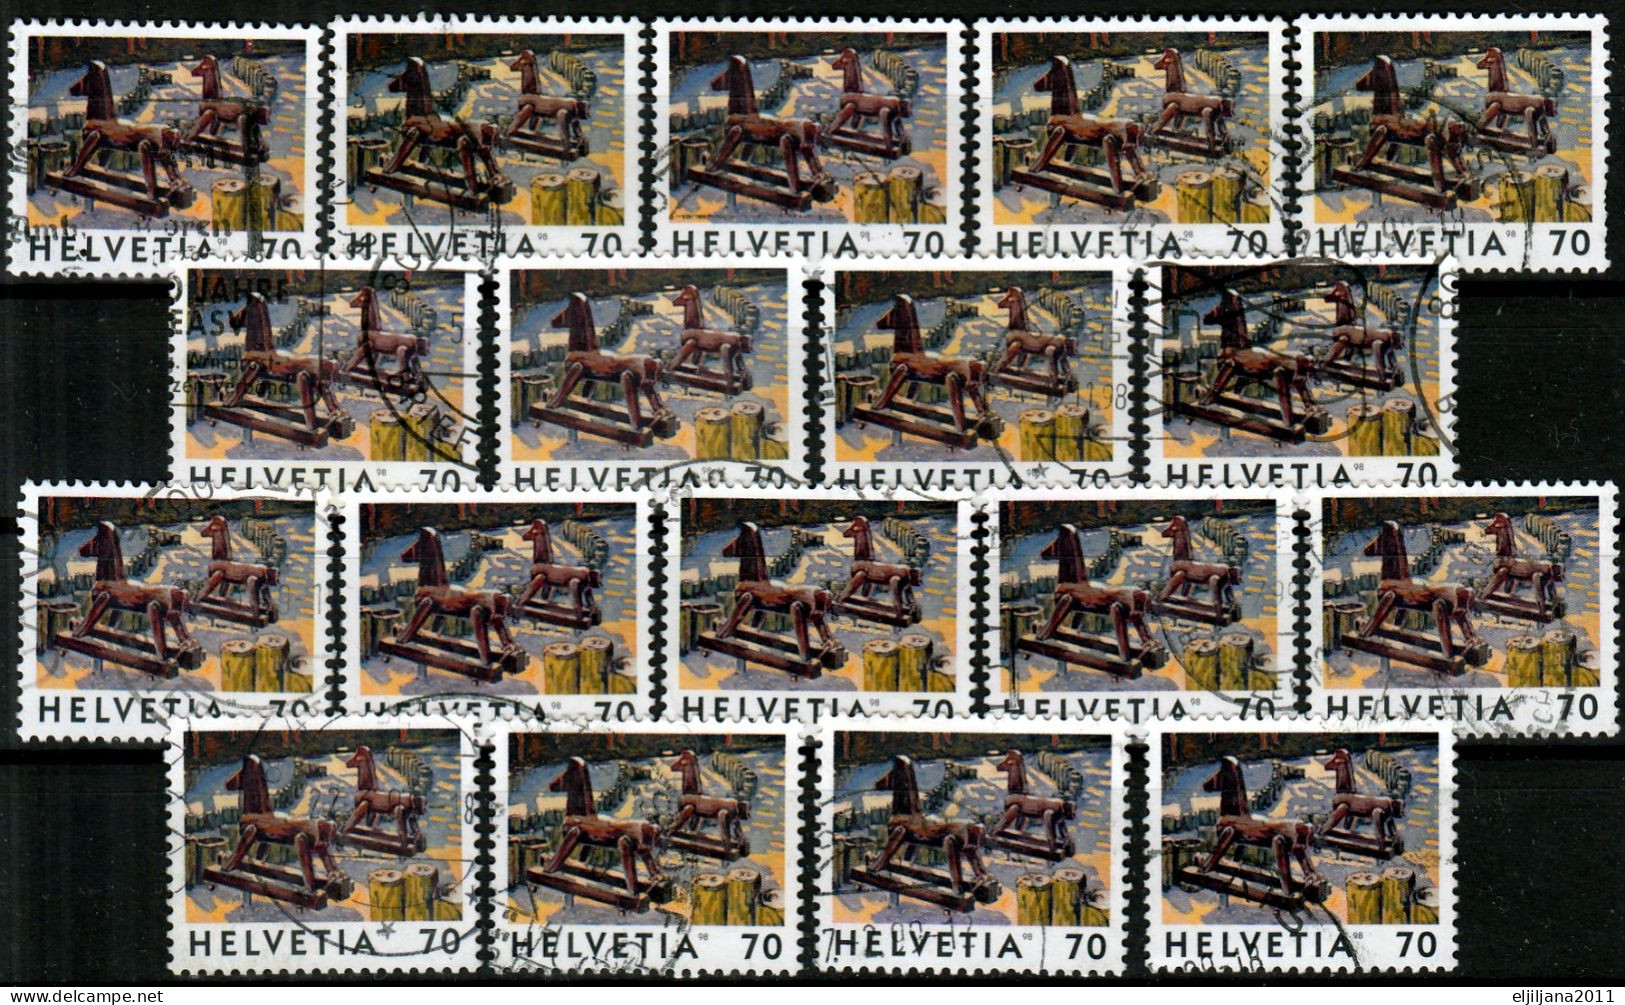 Switzerland / Helvetia / Schweiz / Suisse 1998 ⁕ Deux Chevaux Mi.1646 ⁕ 18v Used - Gebruikt